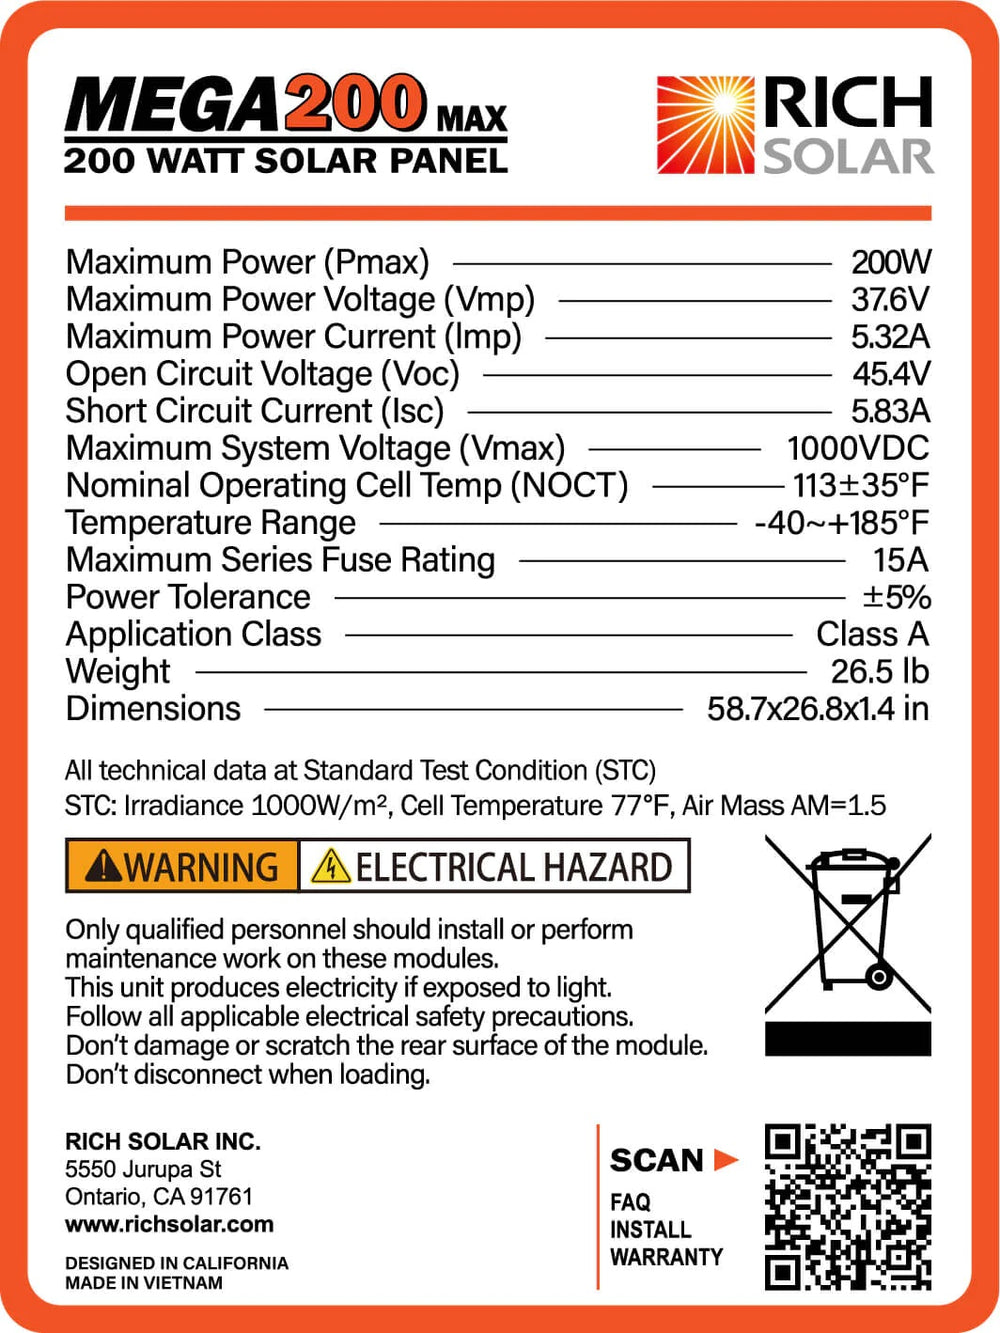 Rich Solar MEGA 200 Watt Monocrystalline 24V Solar Panel Production Label